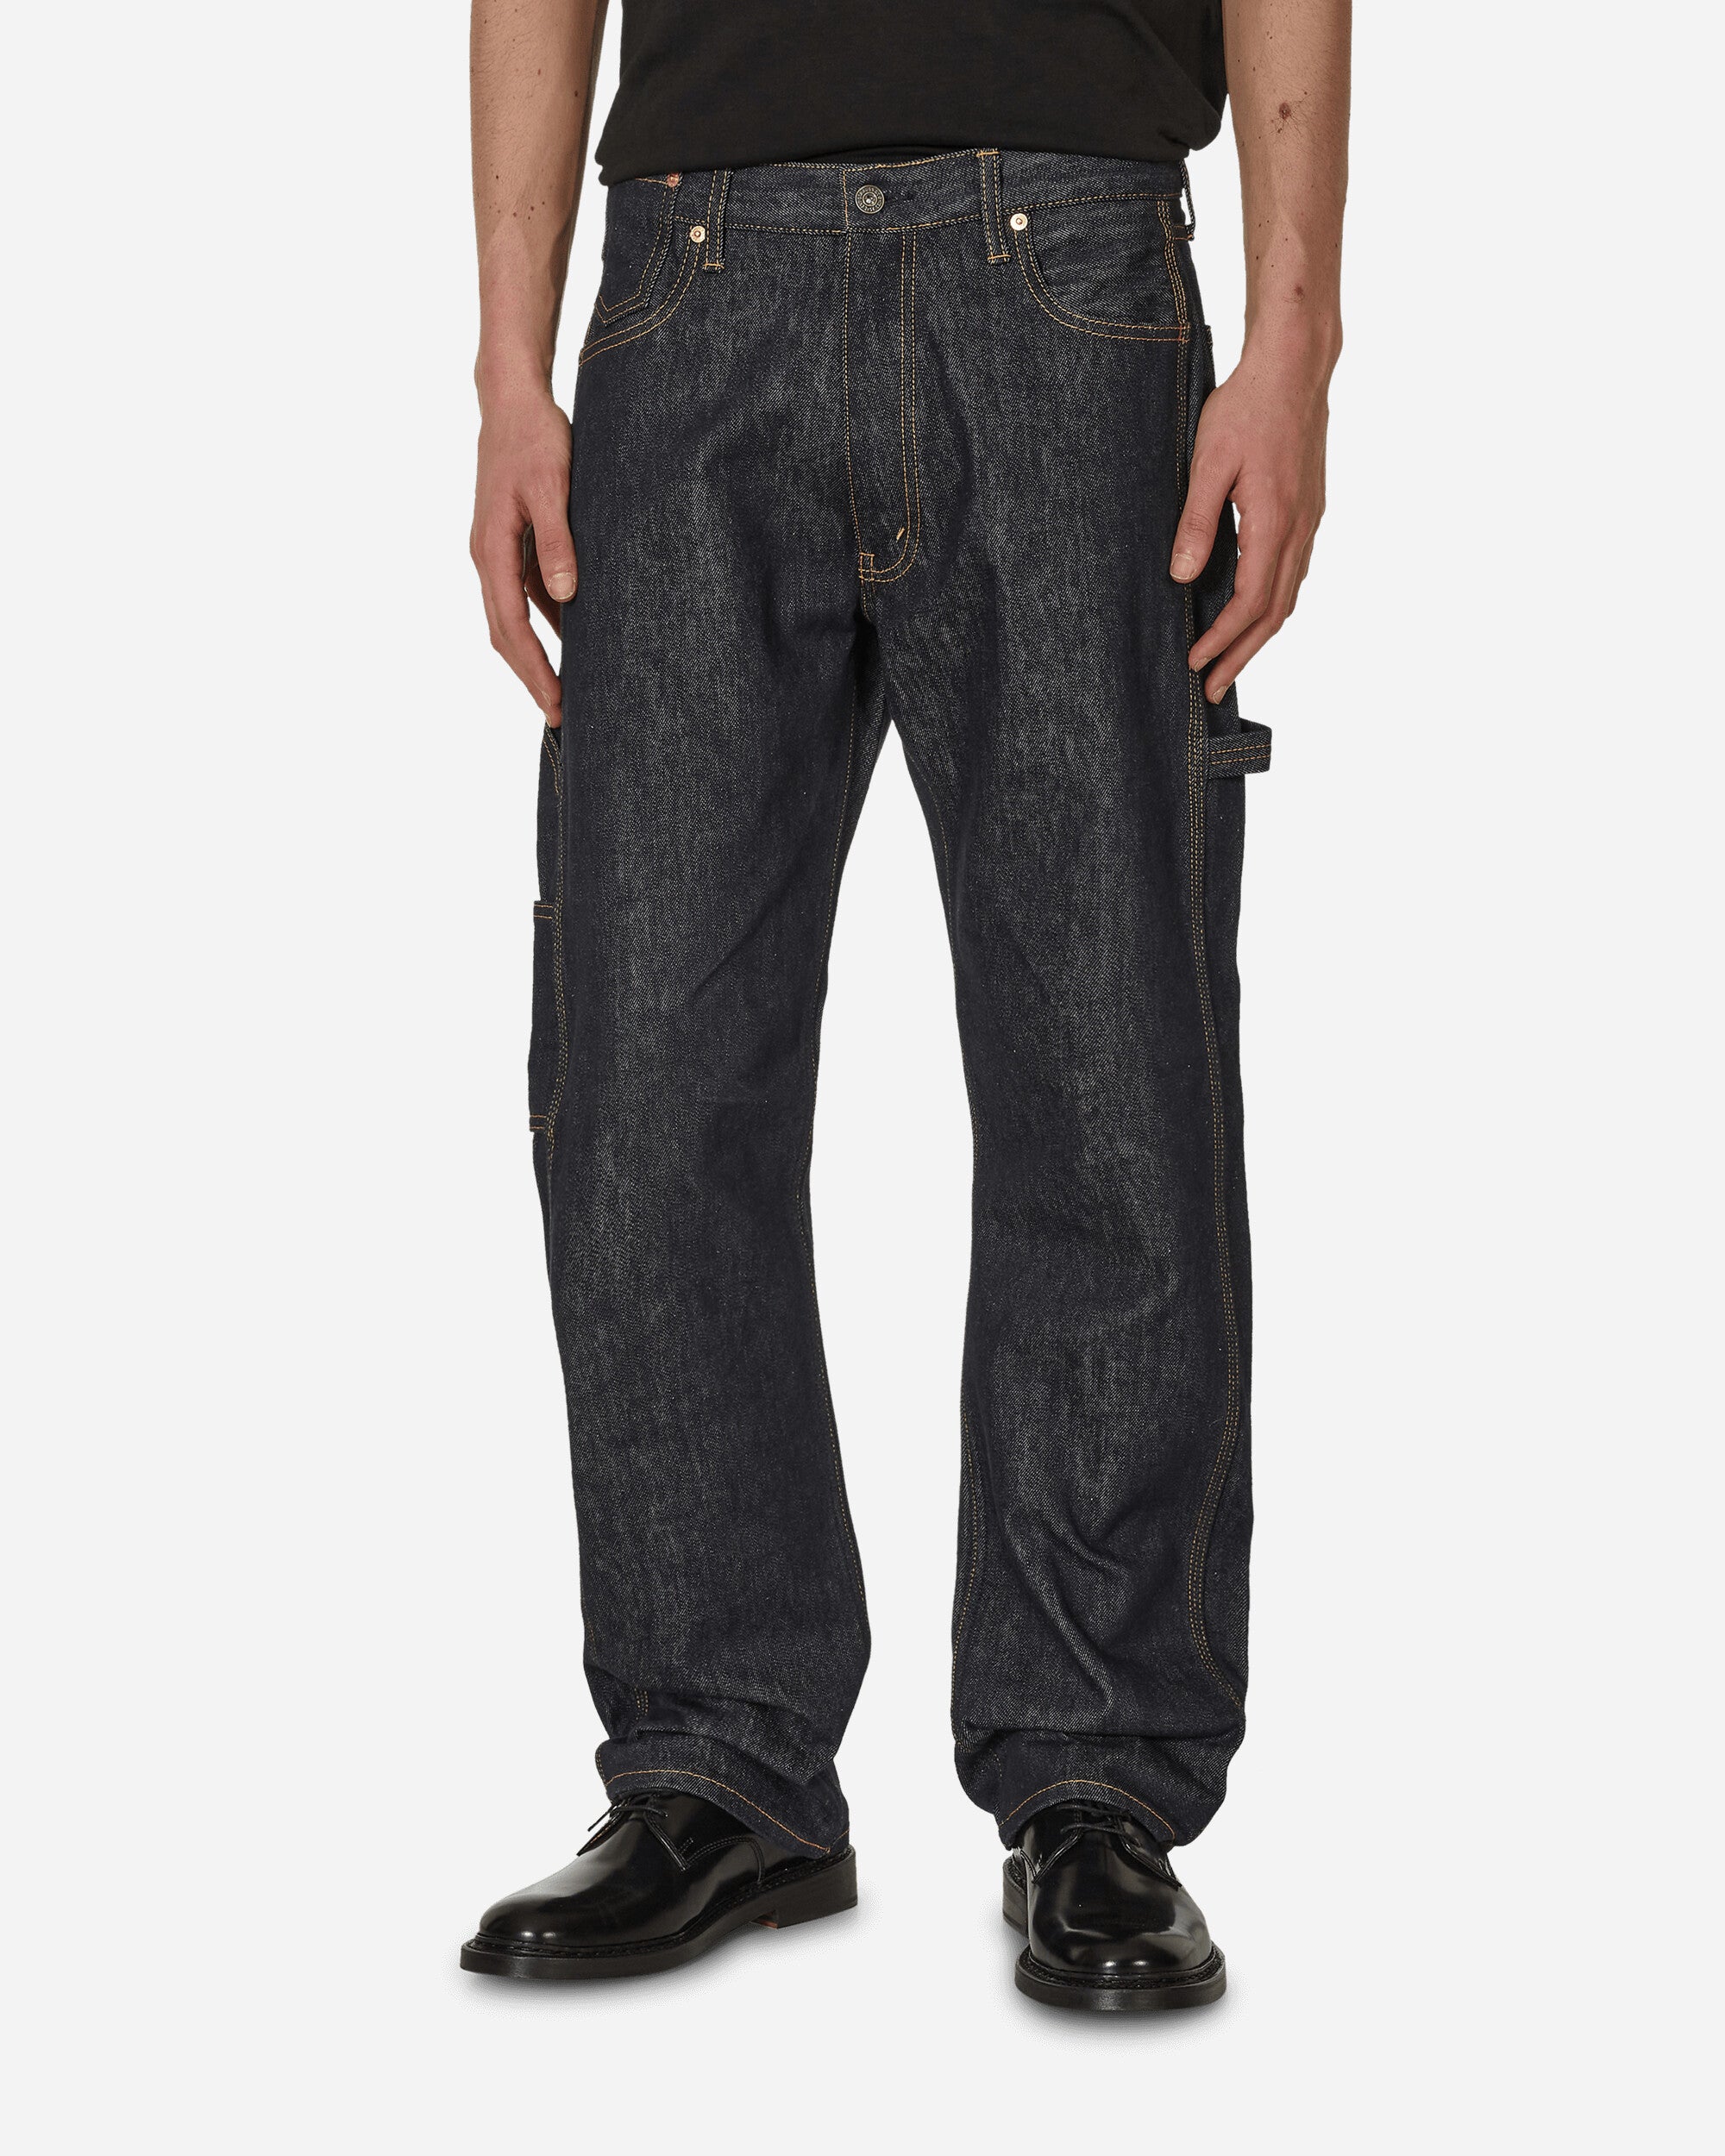 Levi's Carpenter Jeans Indigo